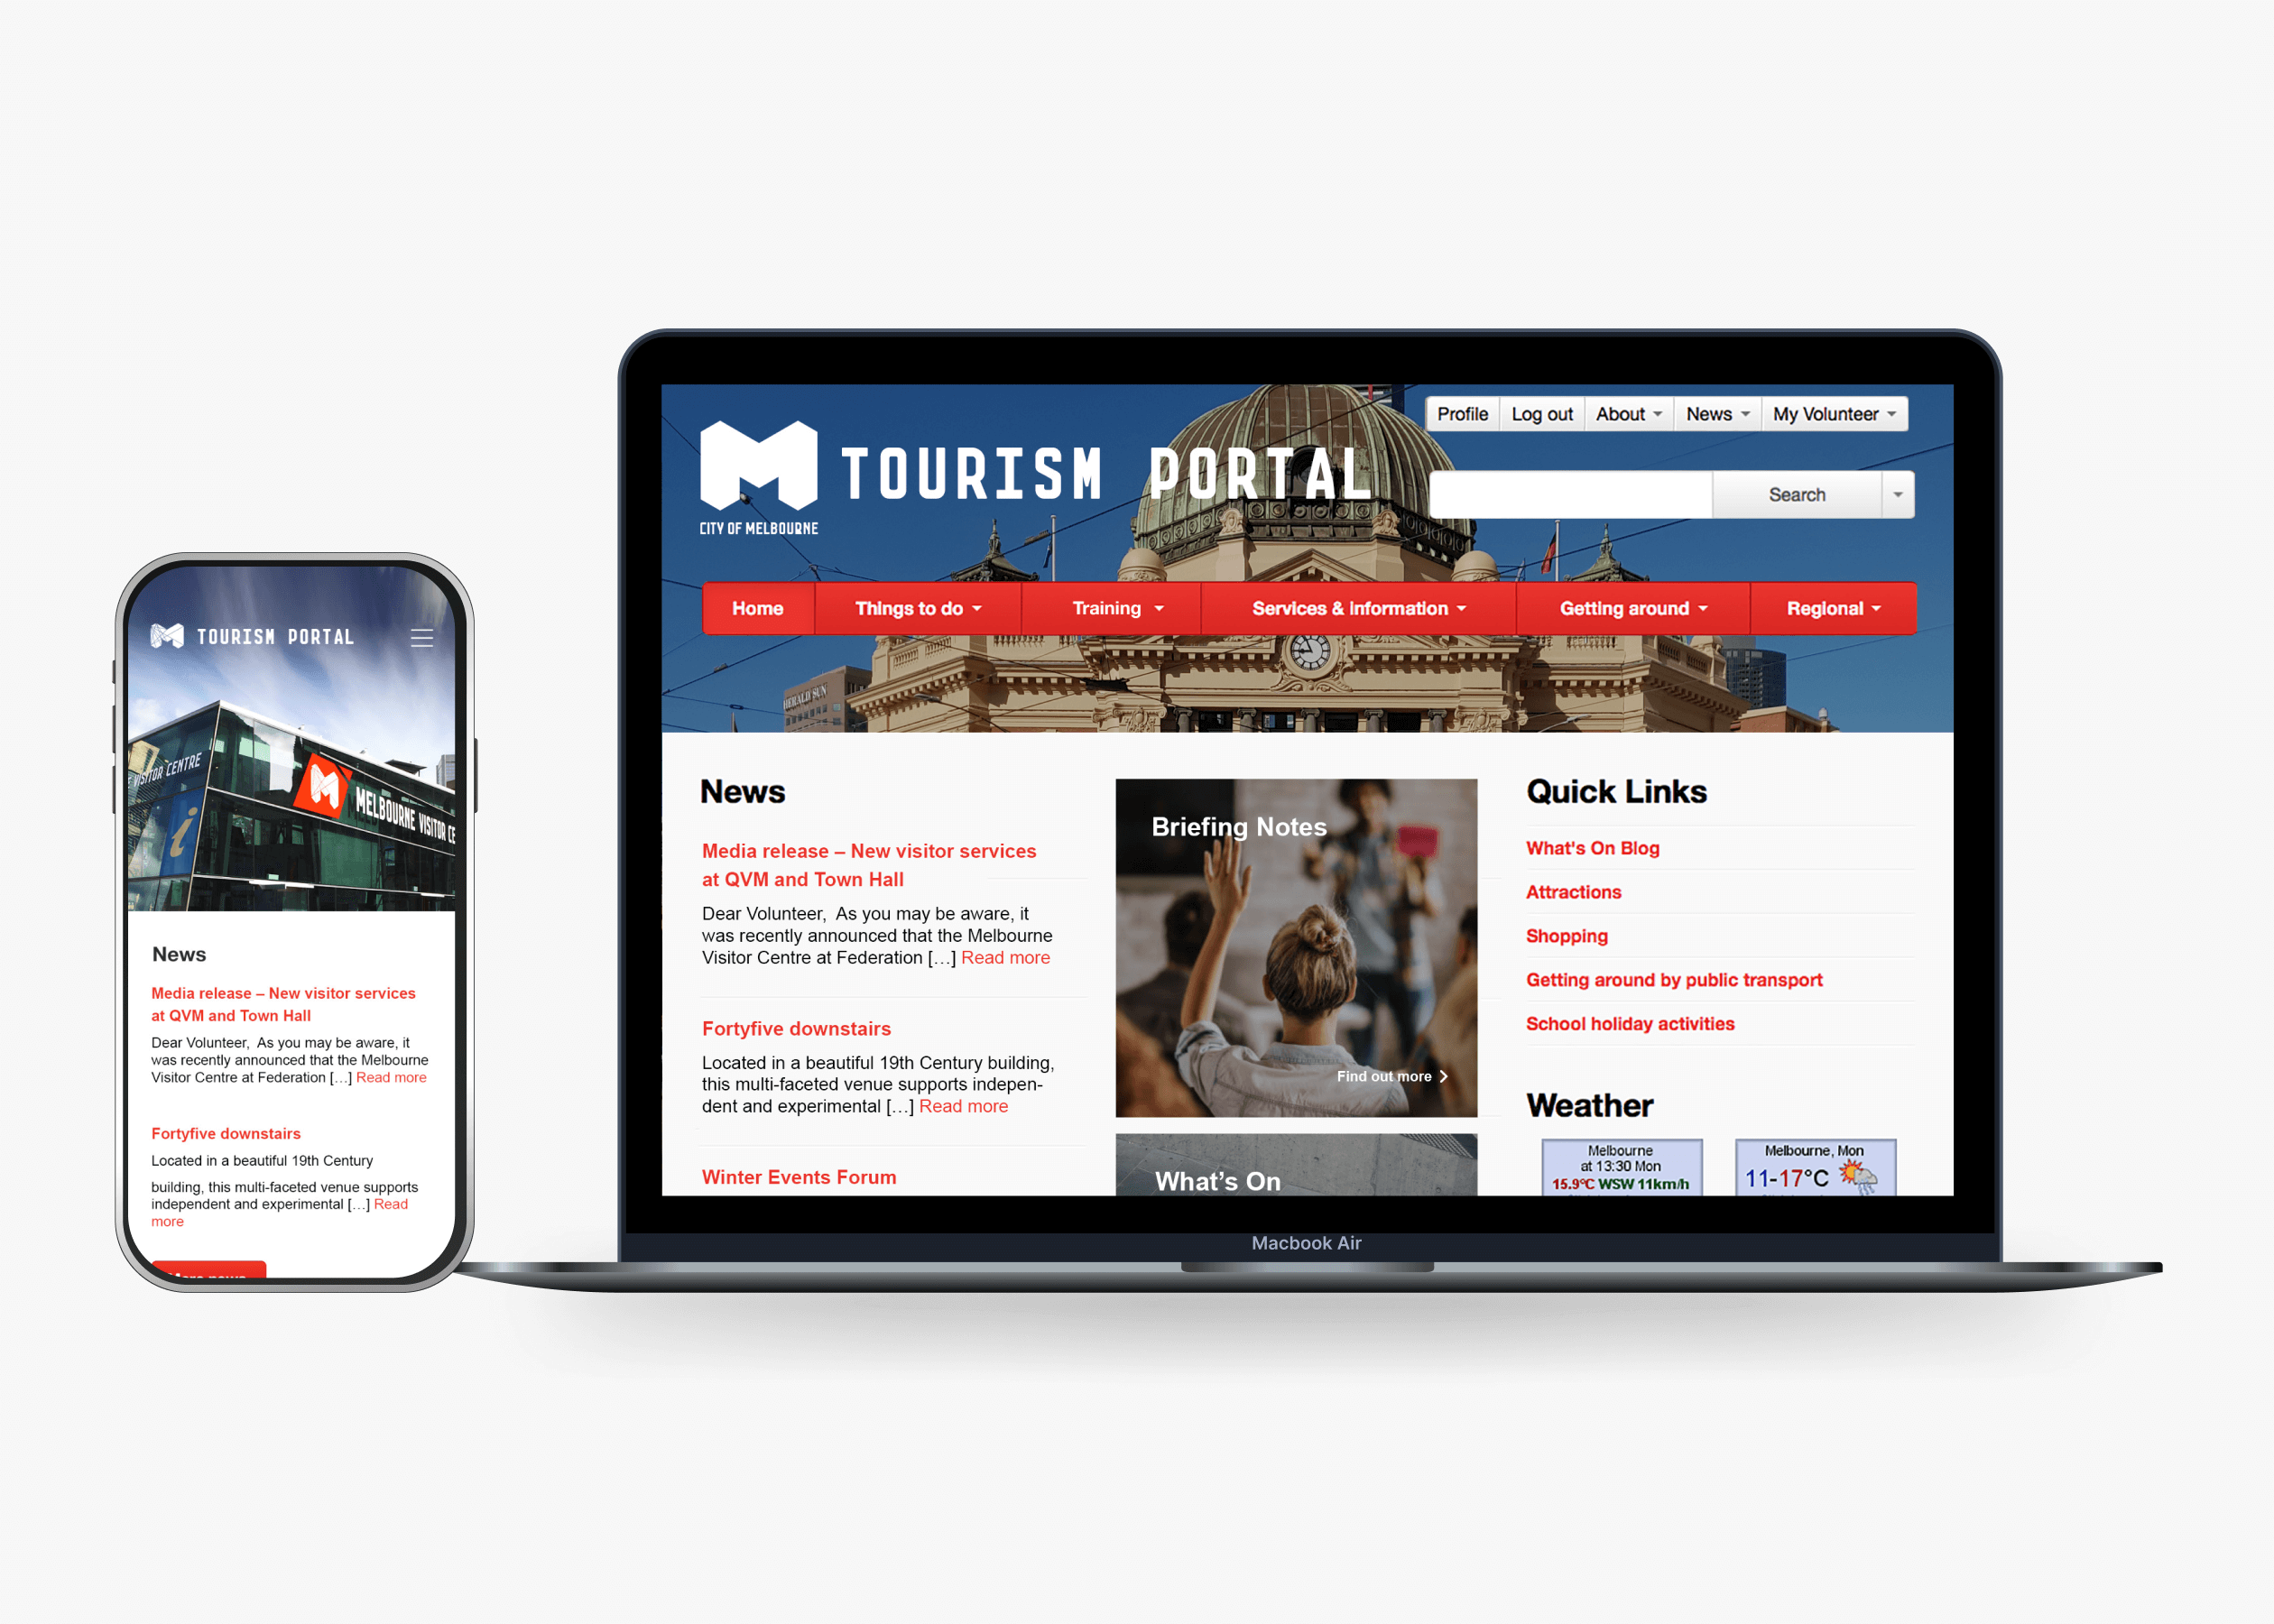 Tourism Portal website pic